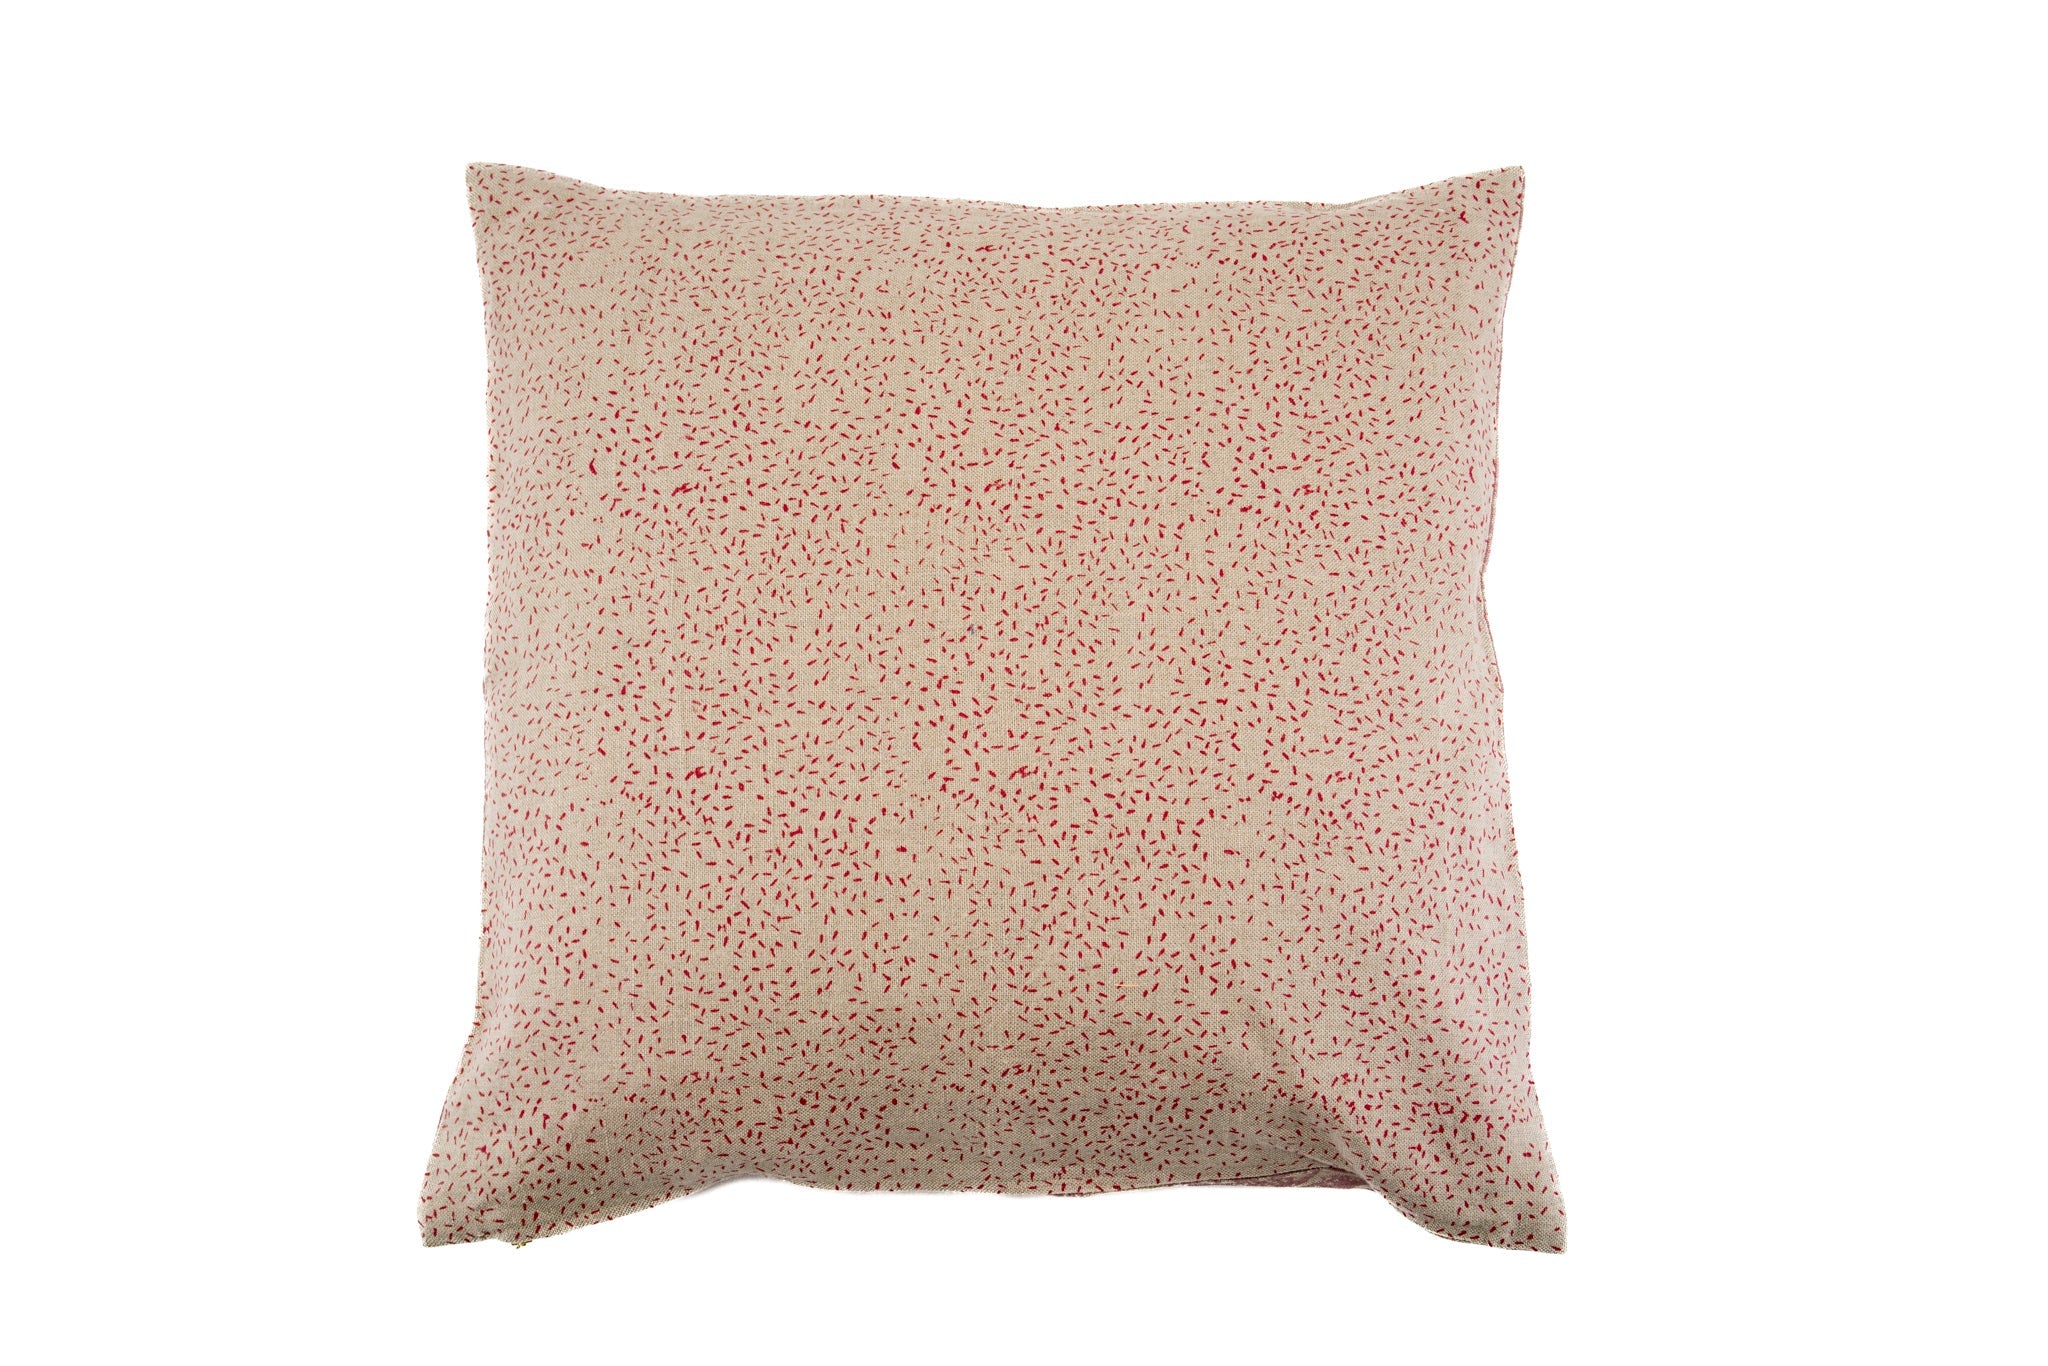 Pillow: Hand printed linen - P447